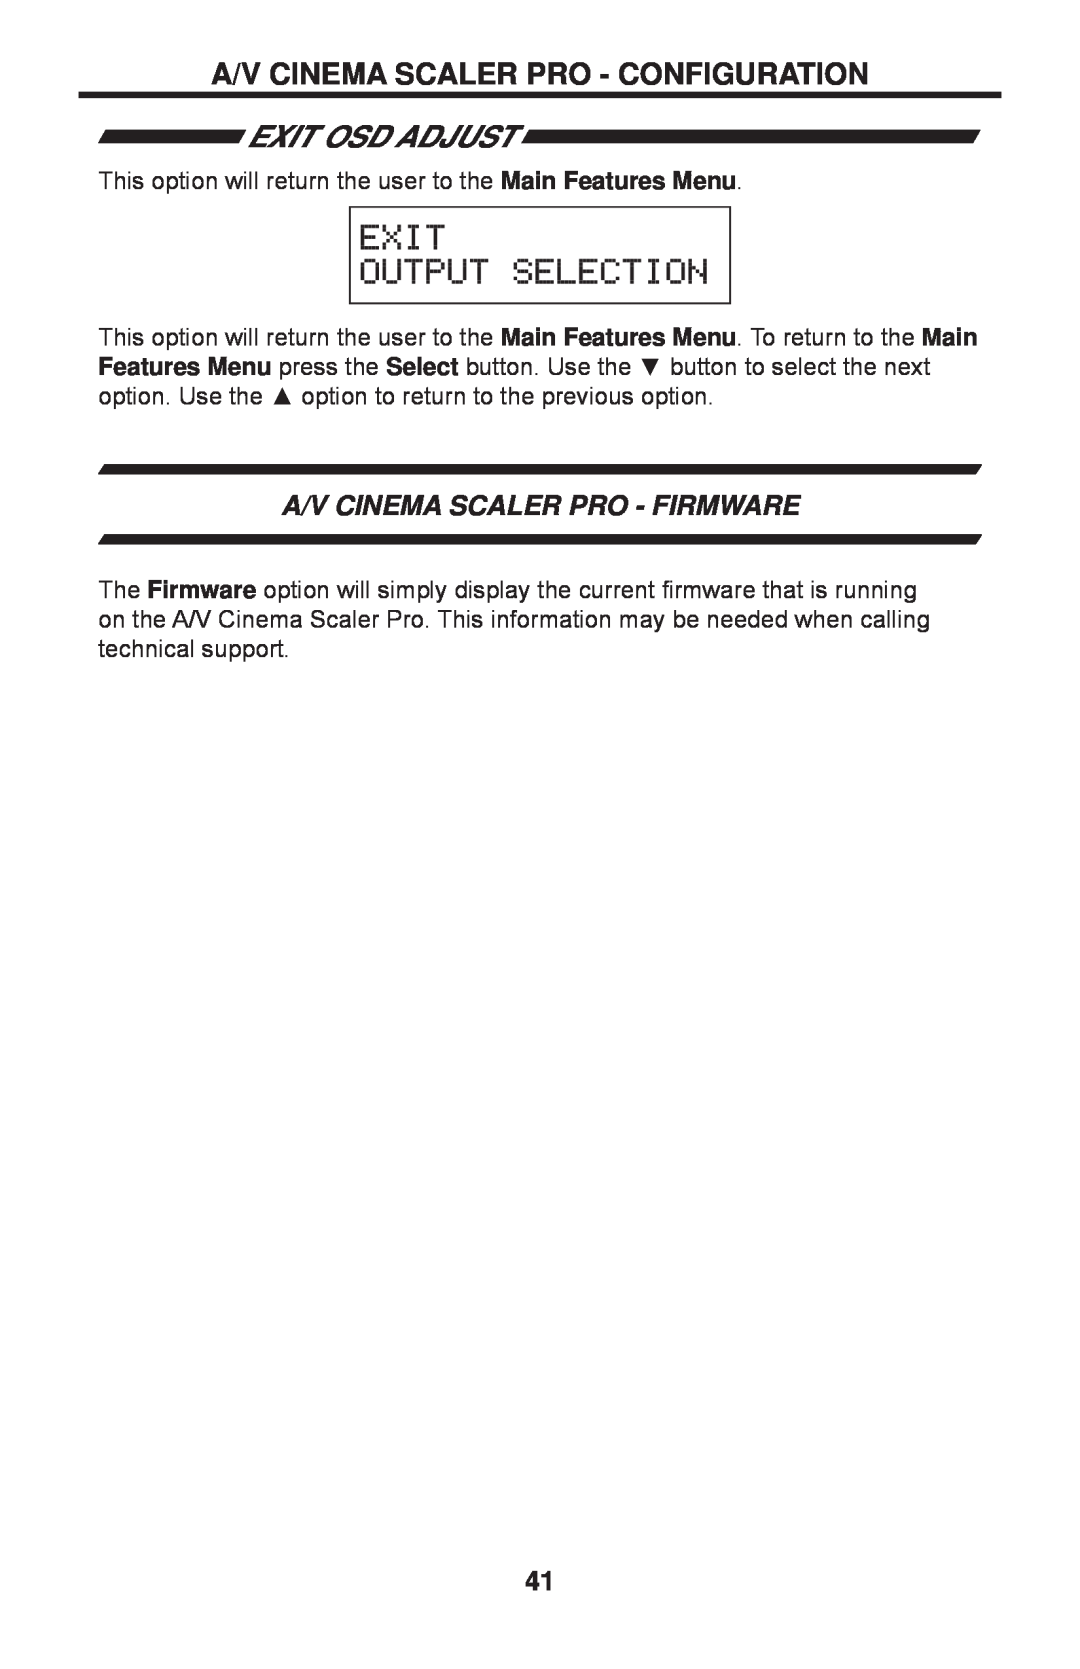 Gefen PRO I user manual Exit Osd Adjust, A/V Cinema Scaler Pro - Firmware, A/V Cinema Scaler Pro - Configuration 